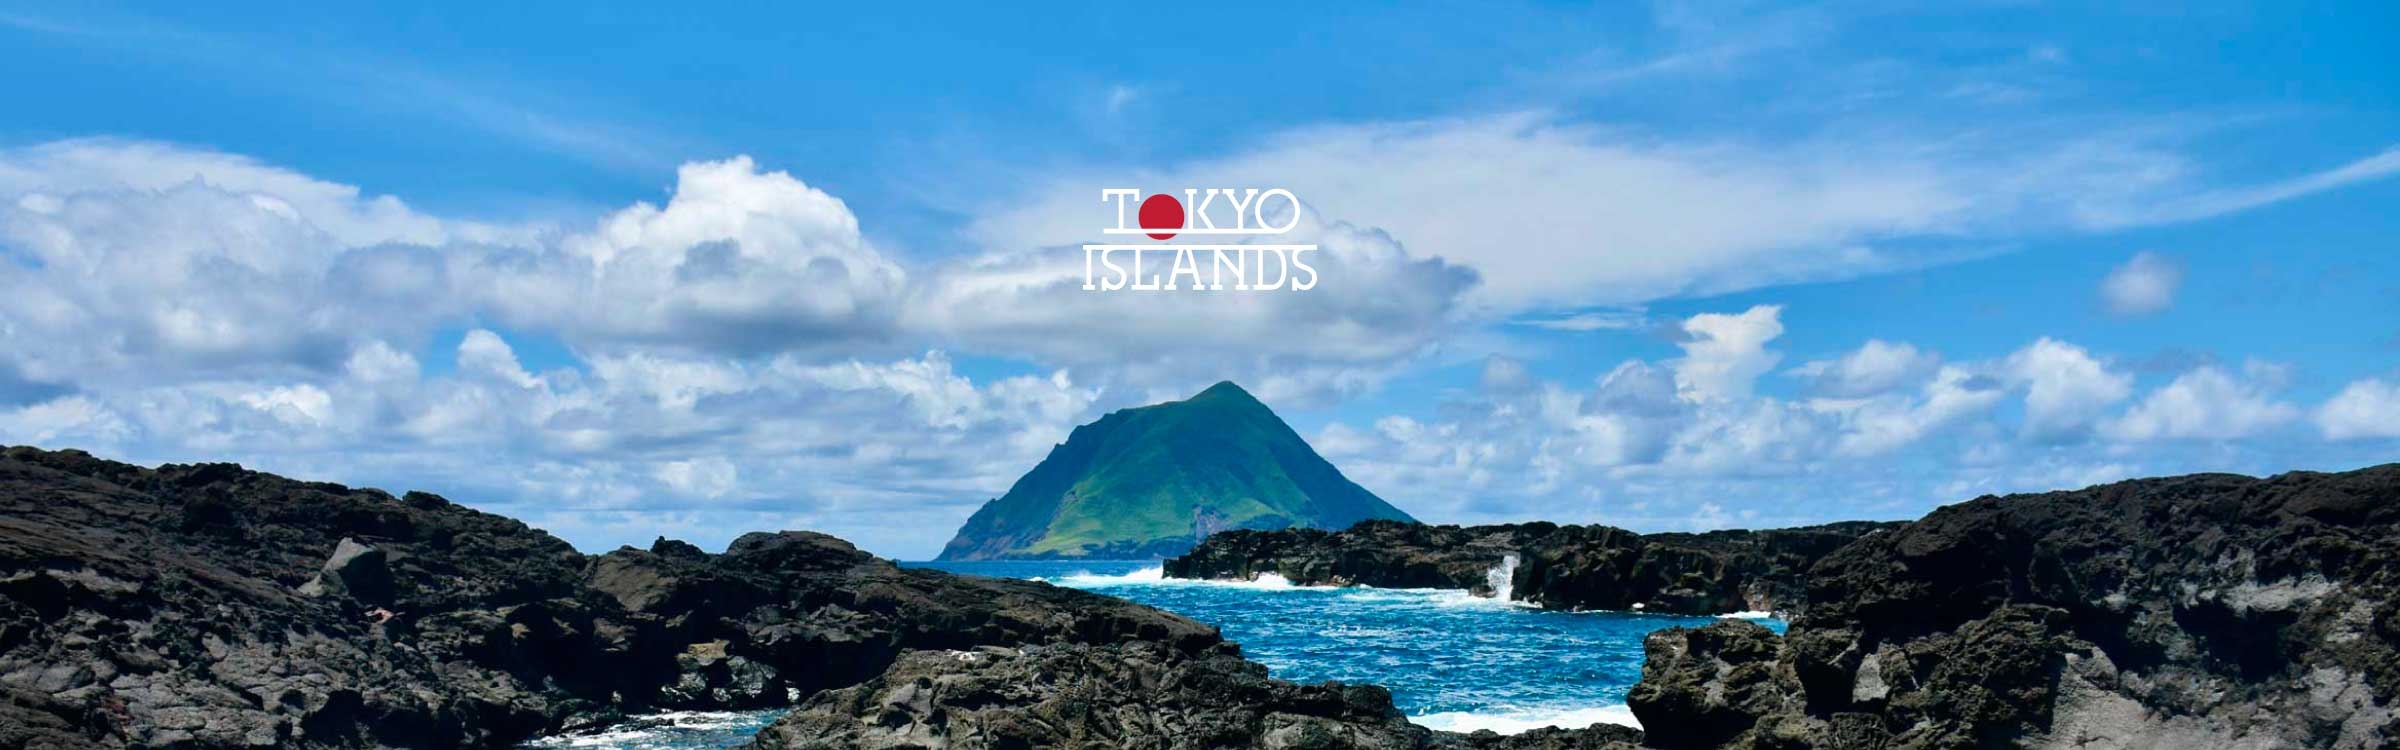 Tokyo Islands